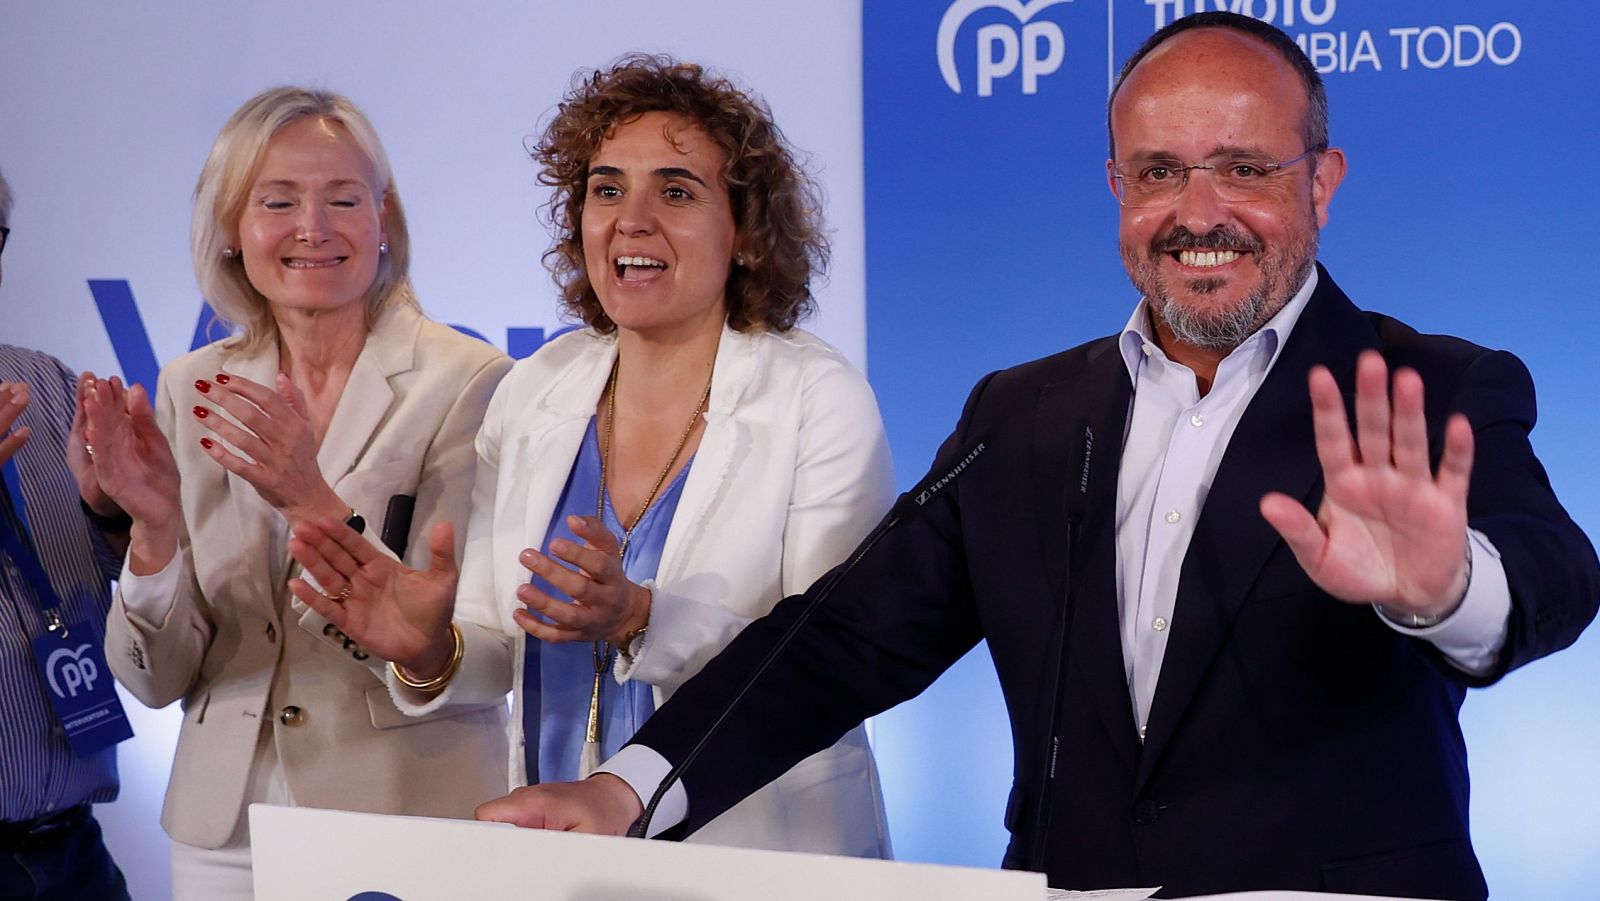 Elecciones catalanas | Alejandro Fernández: "El PP ha vuelto"